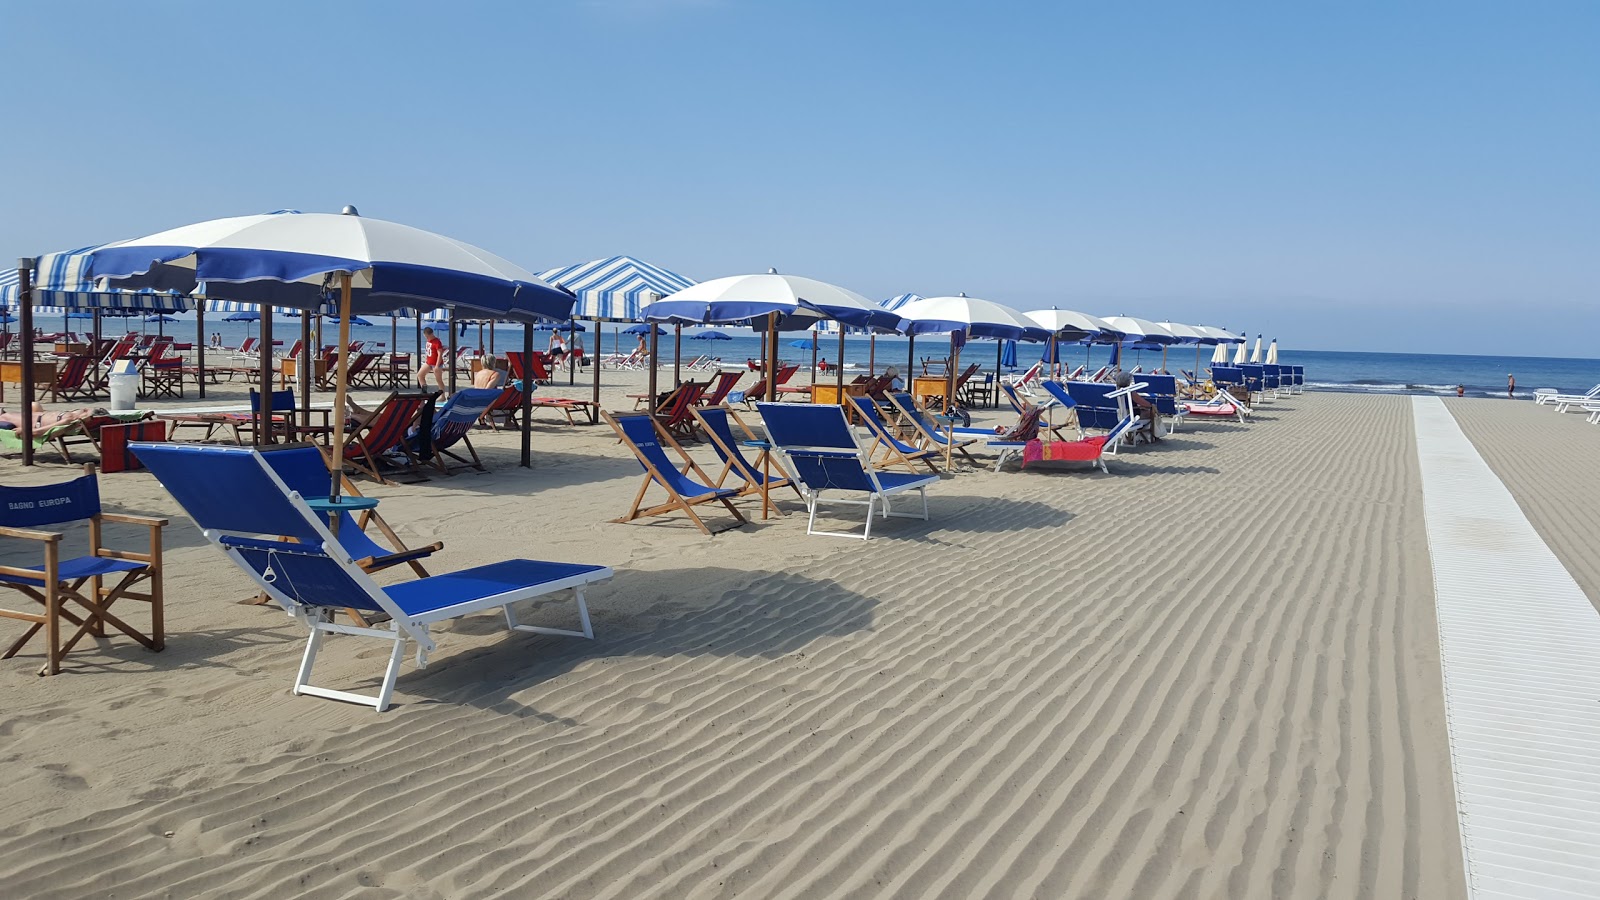 Foto af Spiaggia Marina di Pietrasanta - populært sted blandt afslapningskendere